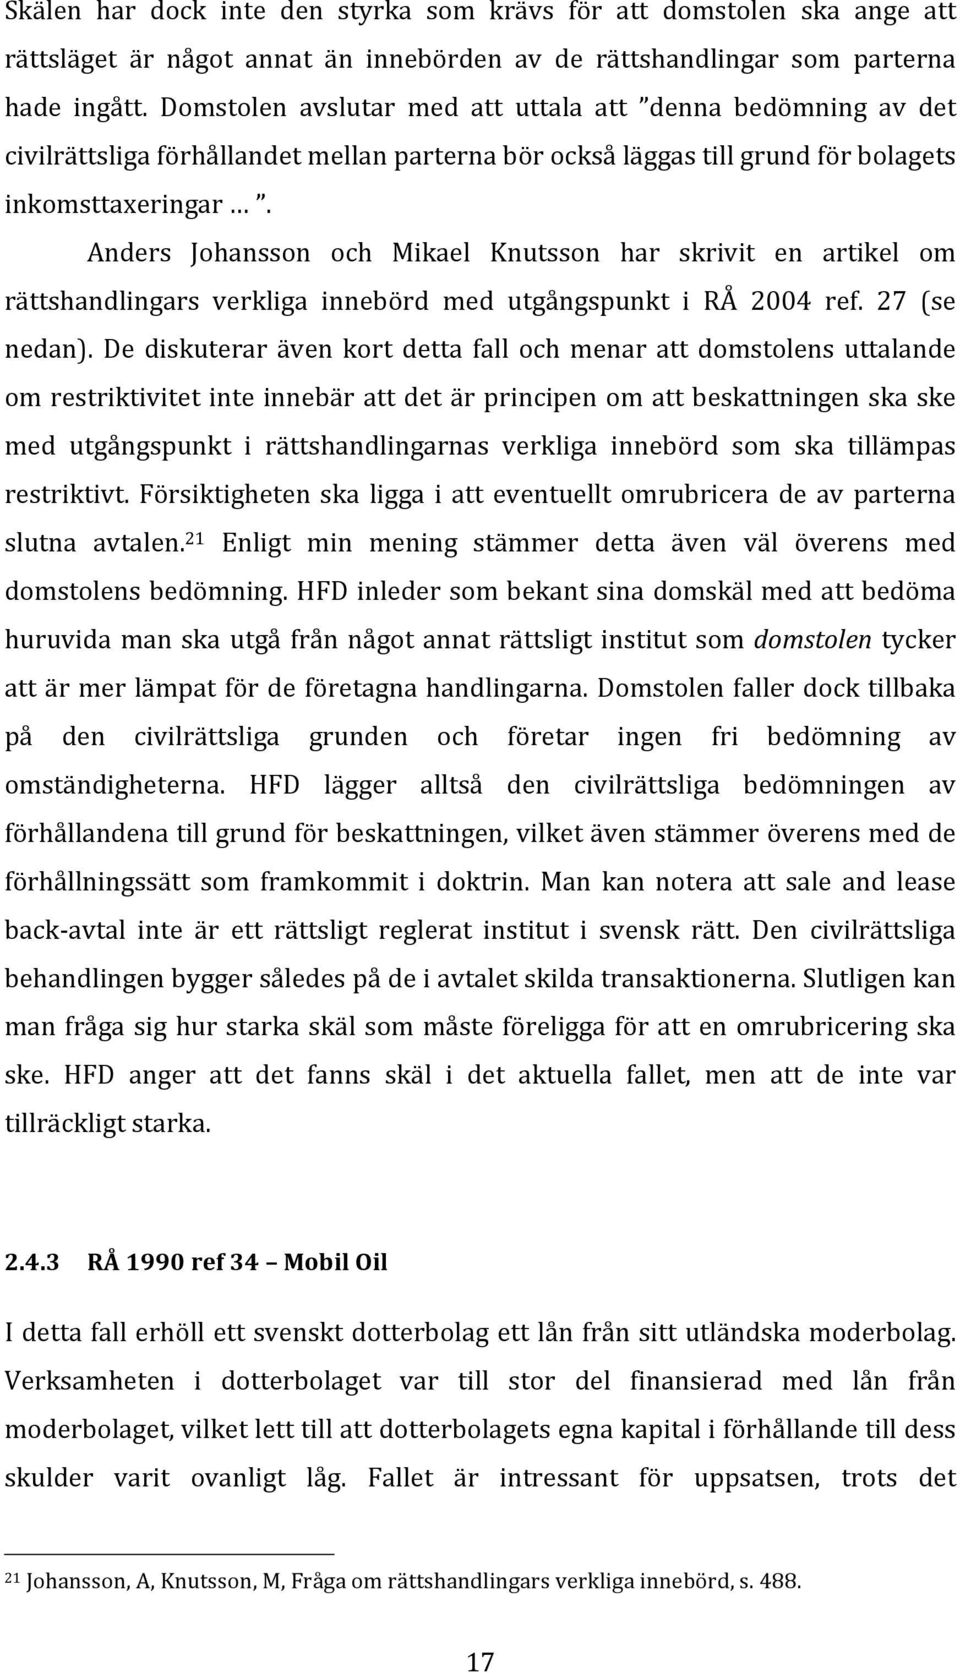 Anders Johansson och Mikael Knutsson har skrivit en artikel om rättshandlingars verkliga innebörd med utgångspunkt i RÅ 2004 ref. 27 (se nedan).